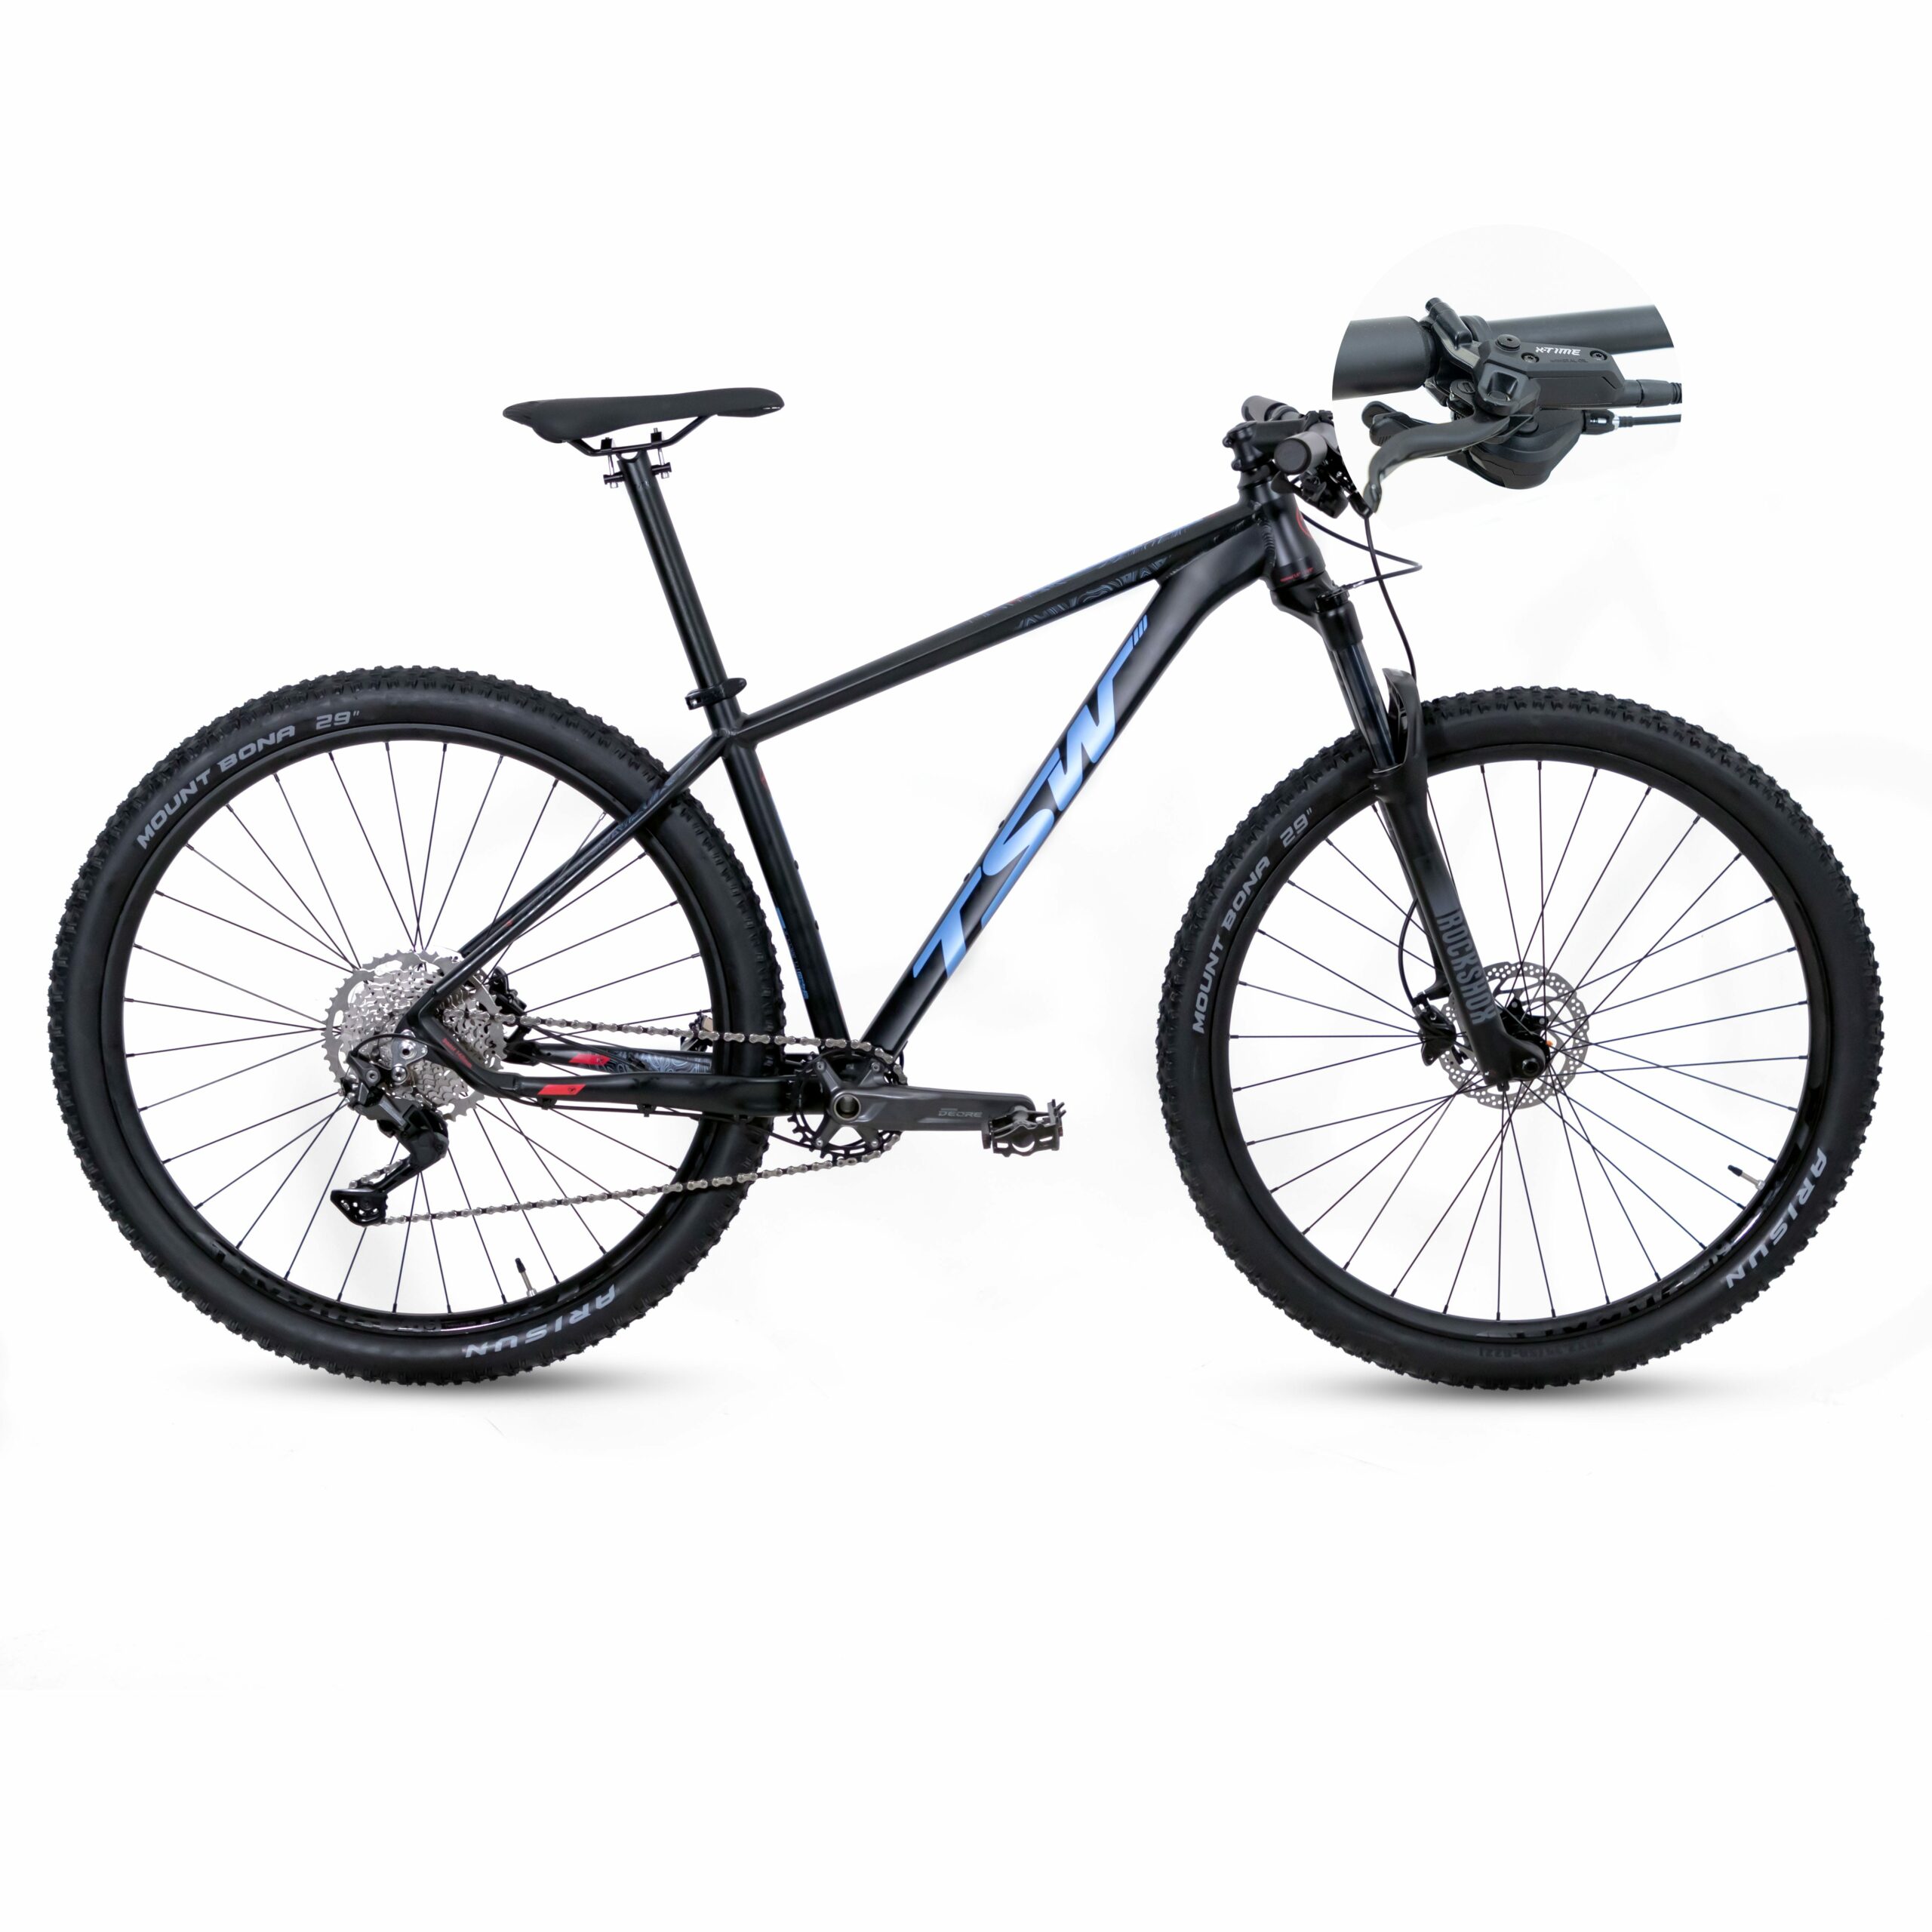 Bicicleta TSW Yukon - Freio X-Time | SH-10 | 2021/2022 - 17.5", Preto/Azul